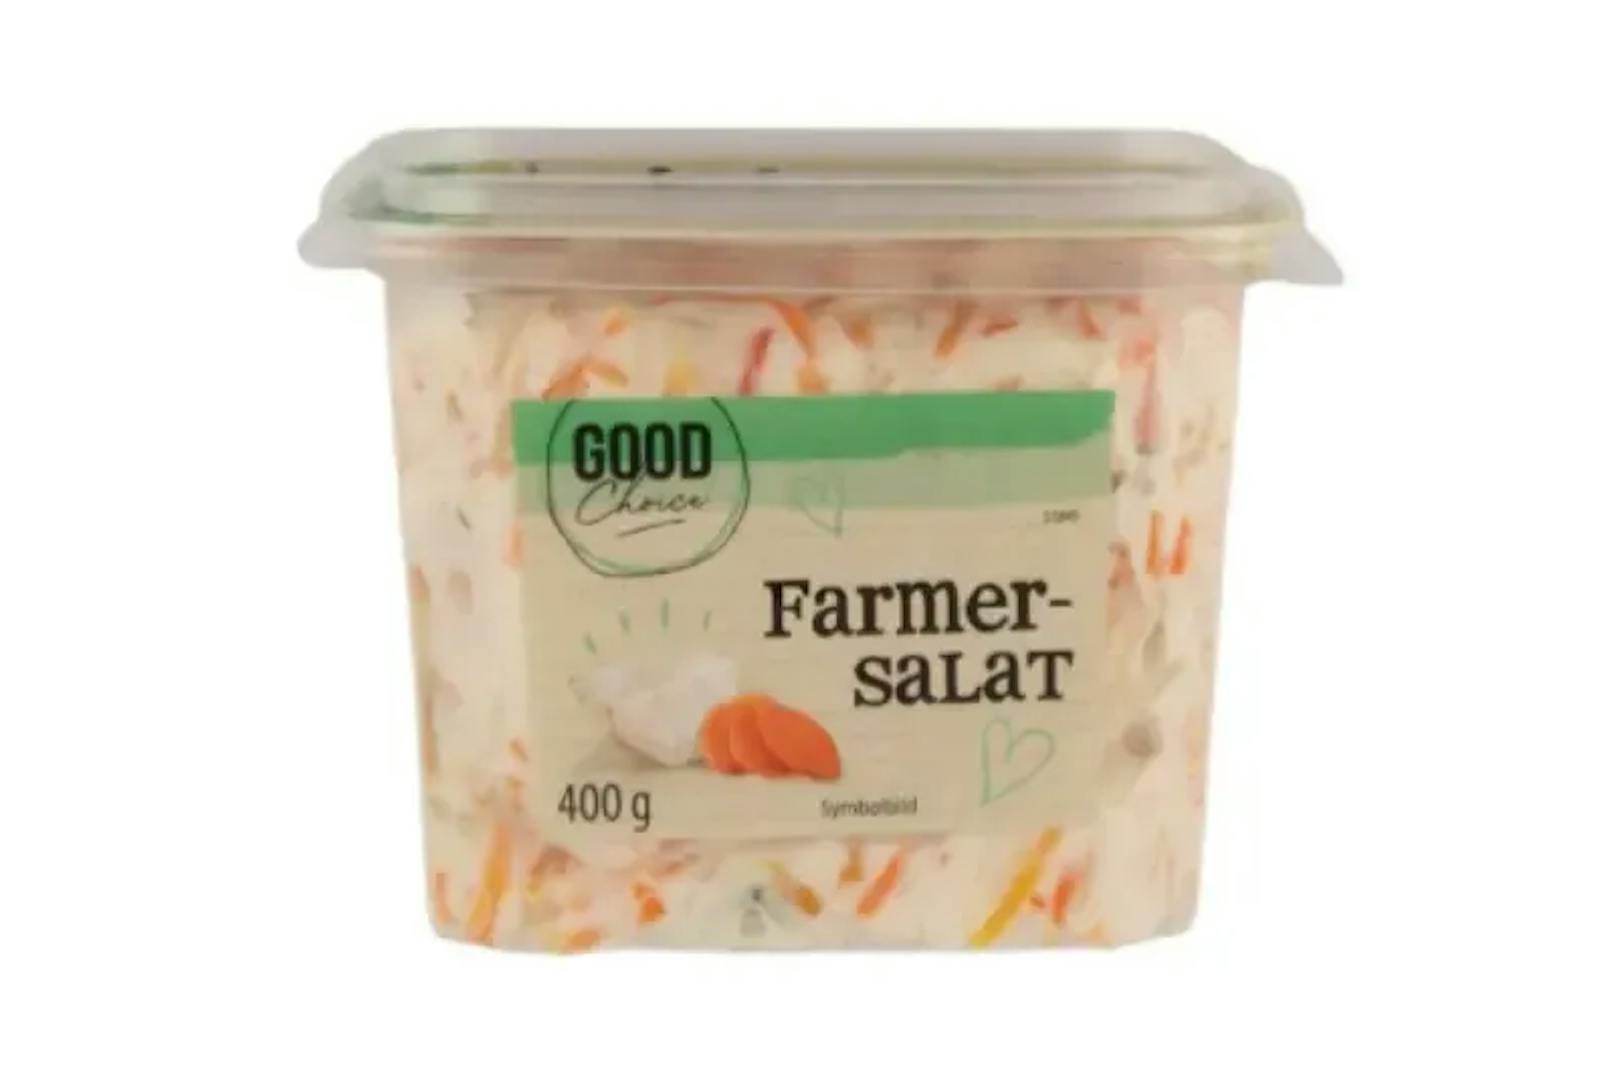 GOOD Choice Farmer Salat 400 g